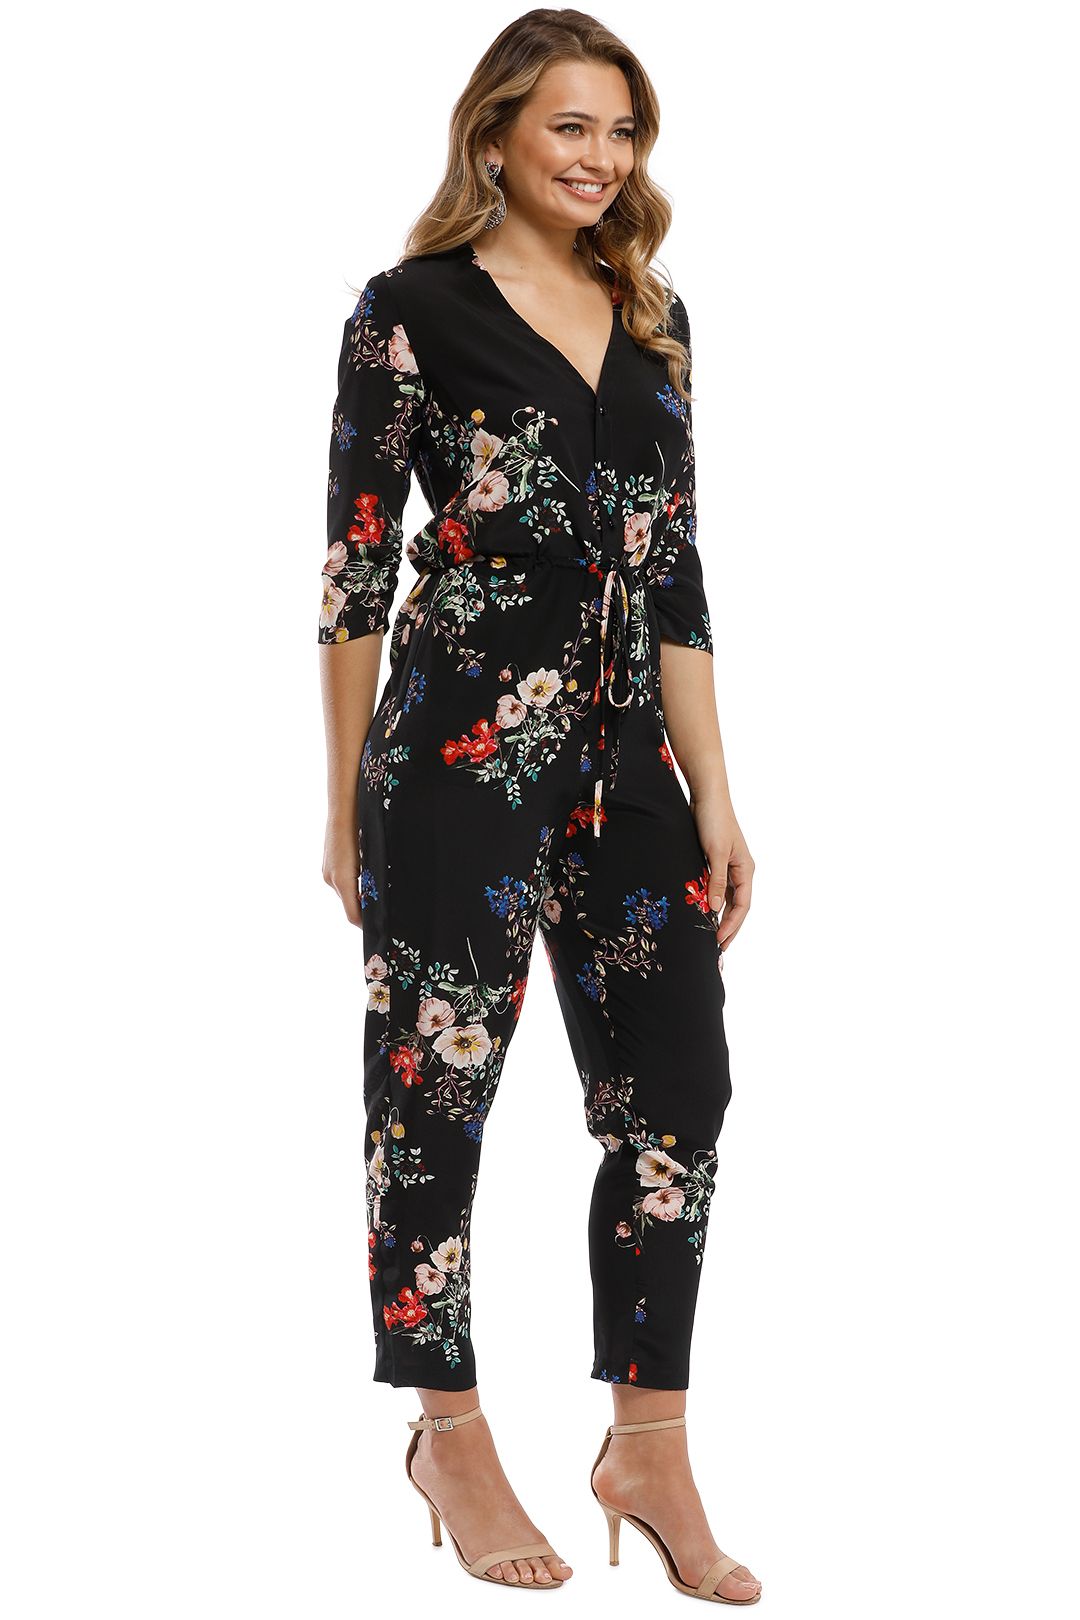 Nicholas - Cecile Floral Jumpsuit - Black Multi - Side